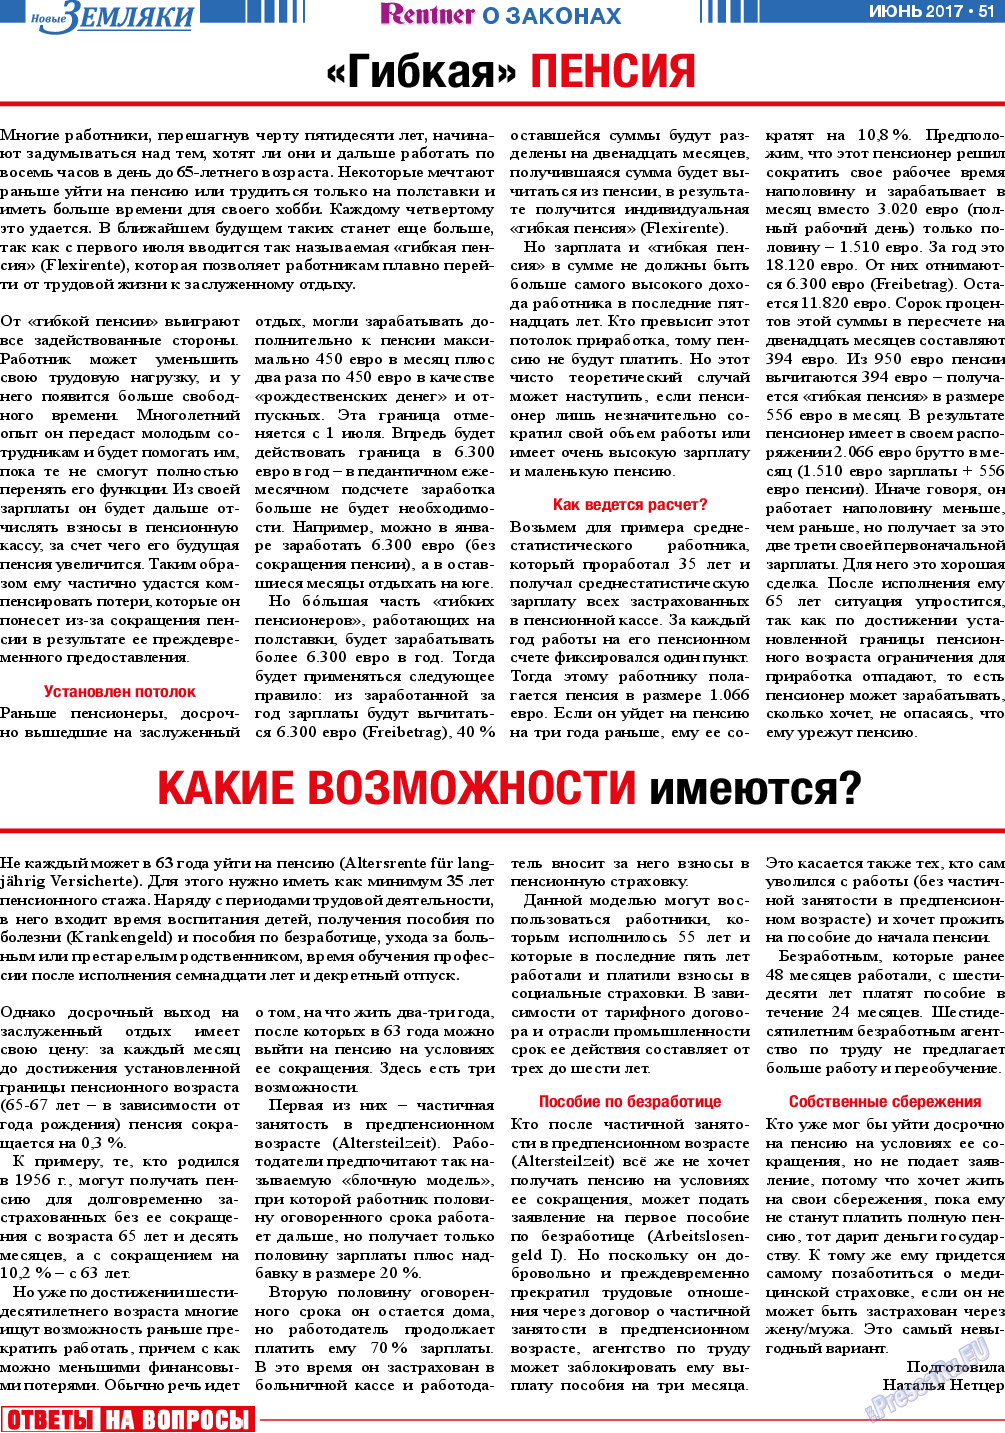 Новые Земляки (газета). 2017 год, номер 6, стр. 51